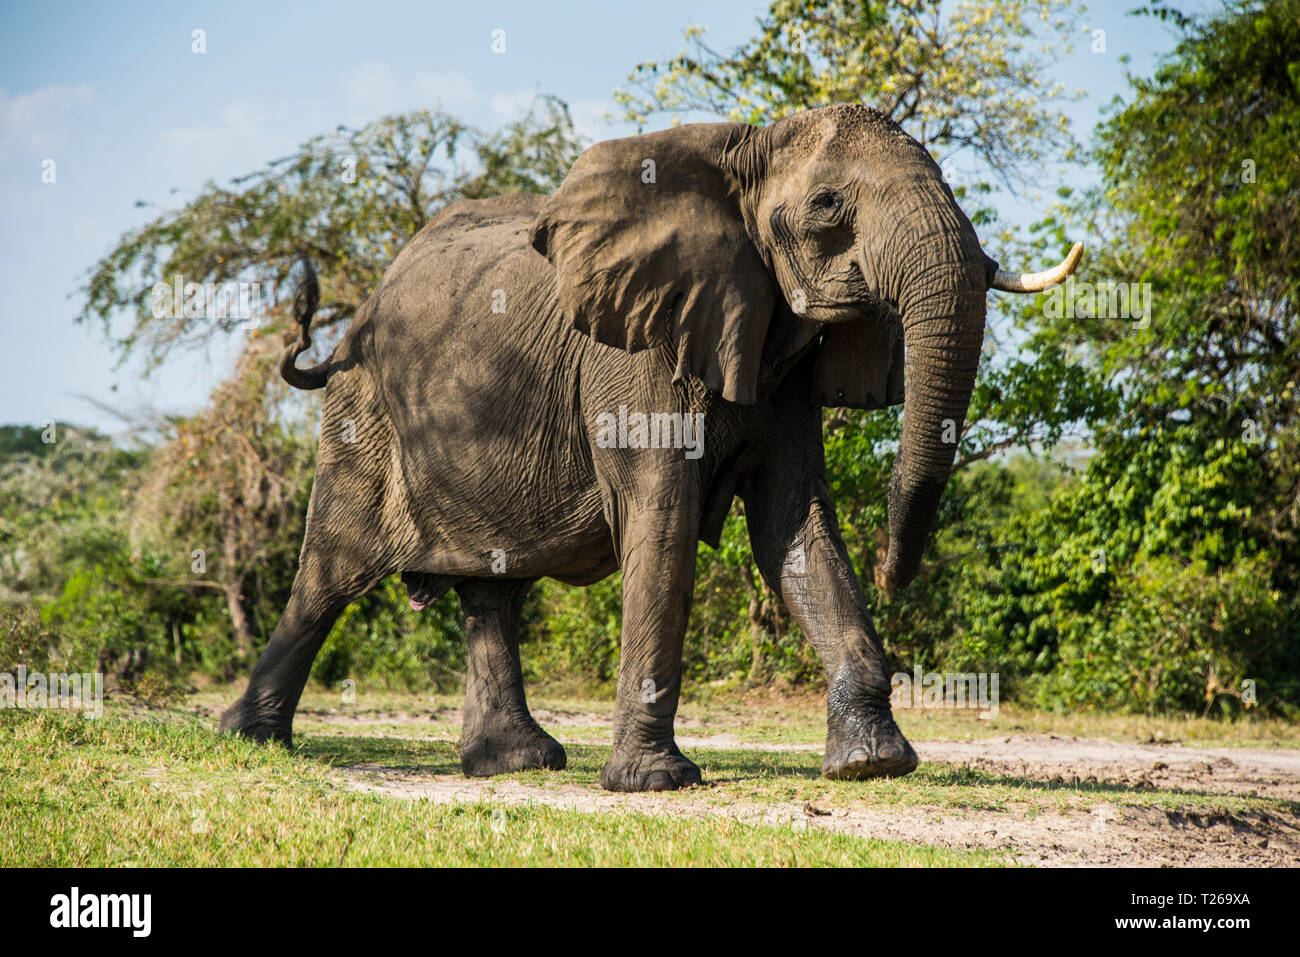 África, Uganda, el elefante africano, Loxodonta africana, Parque Nacional de Murchison Falls Foto de stock